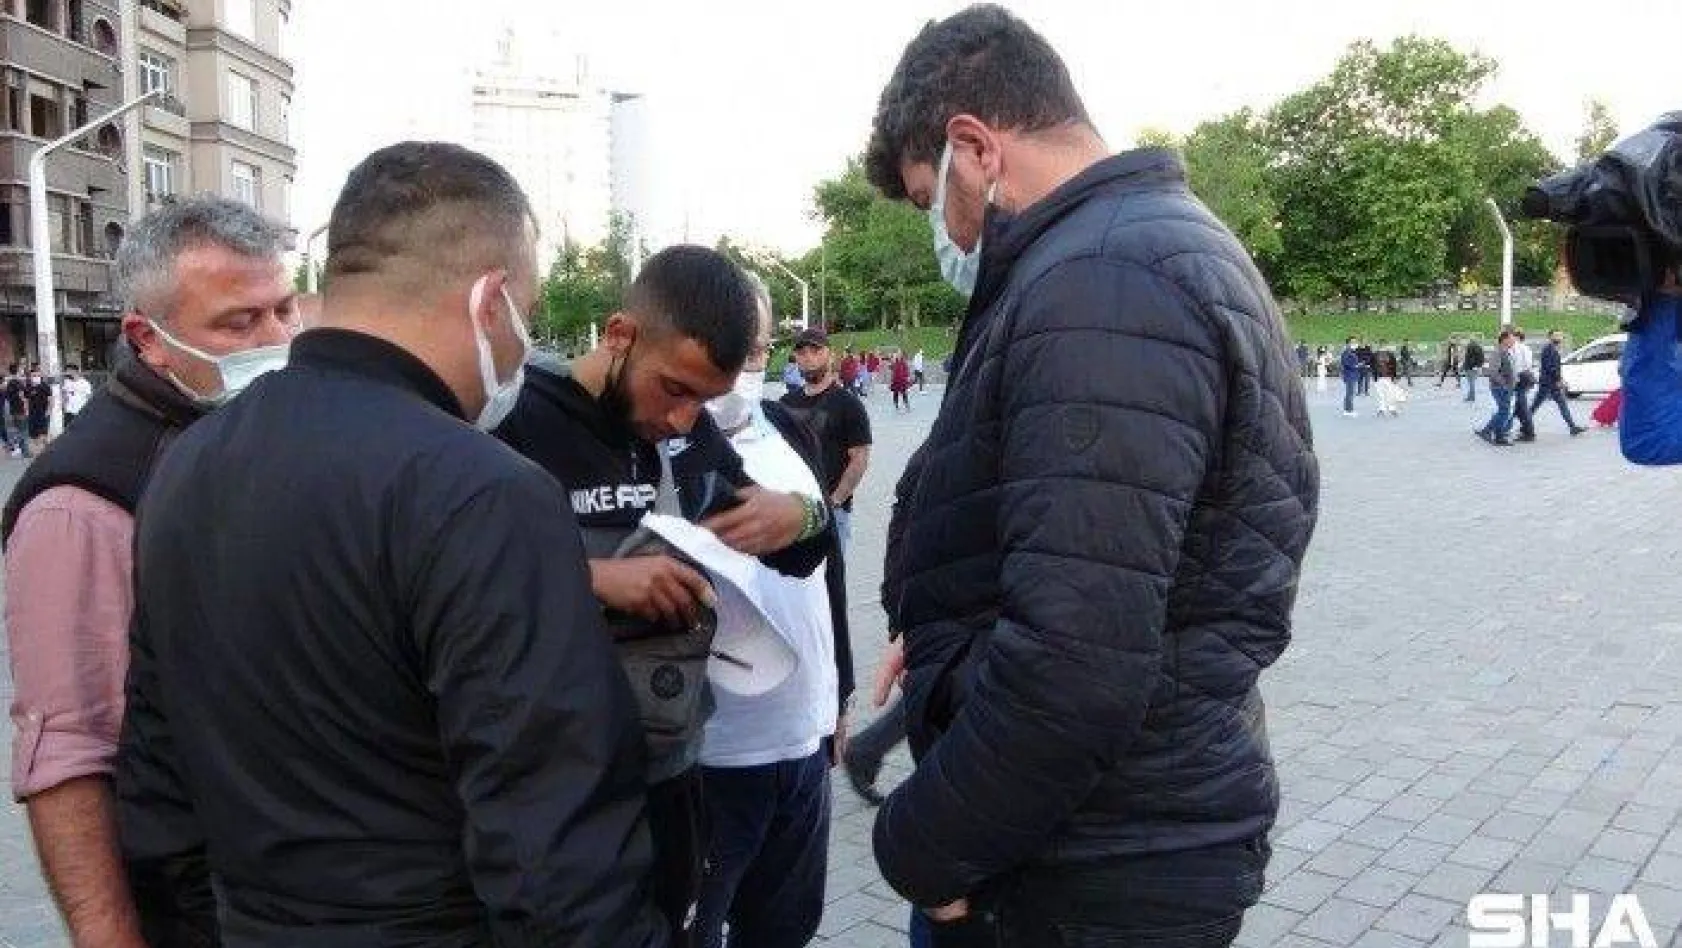 Taksim'de fahiş fiyatla parfüm satanları polis ve zabıta ekipleri yakaladı